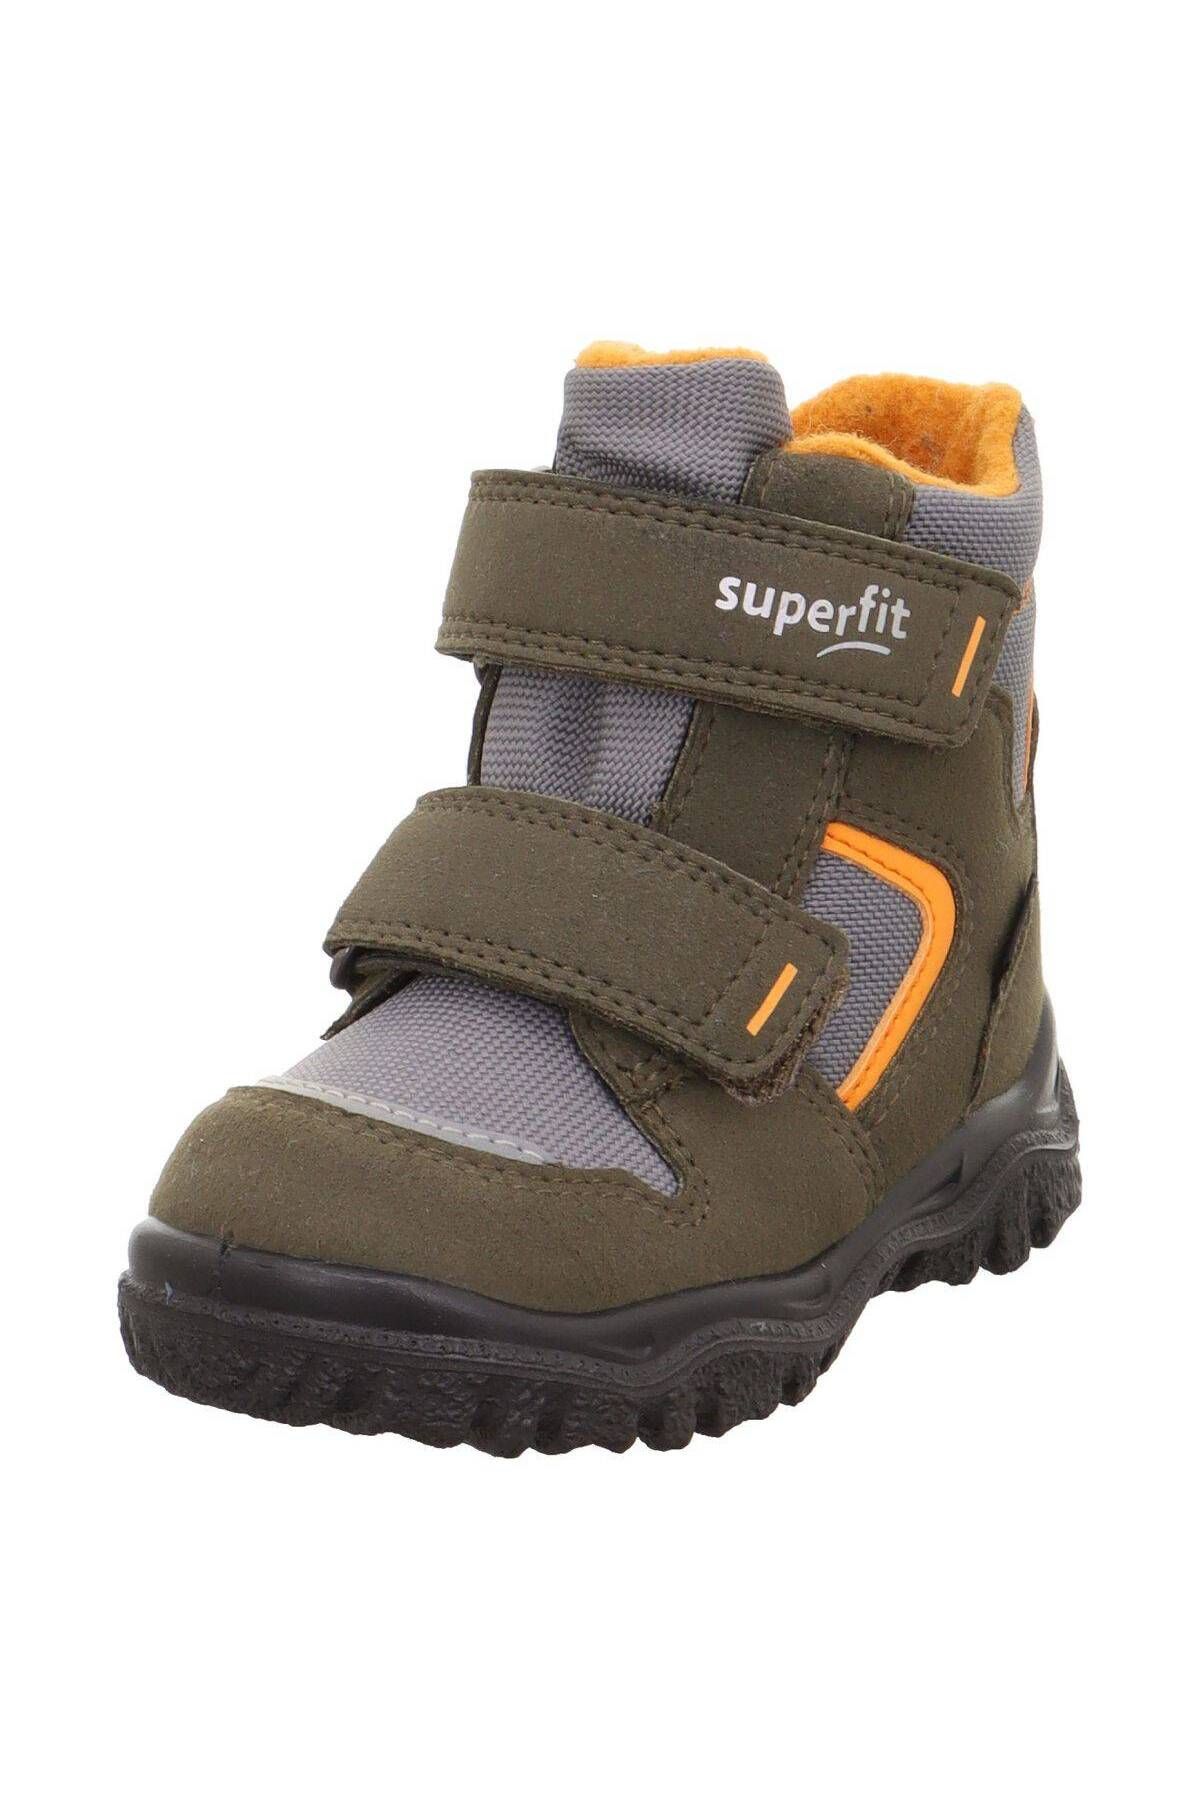 Superfit Gore-Tex Kar Ayakkabısı Erkek Çocuk Bot